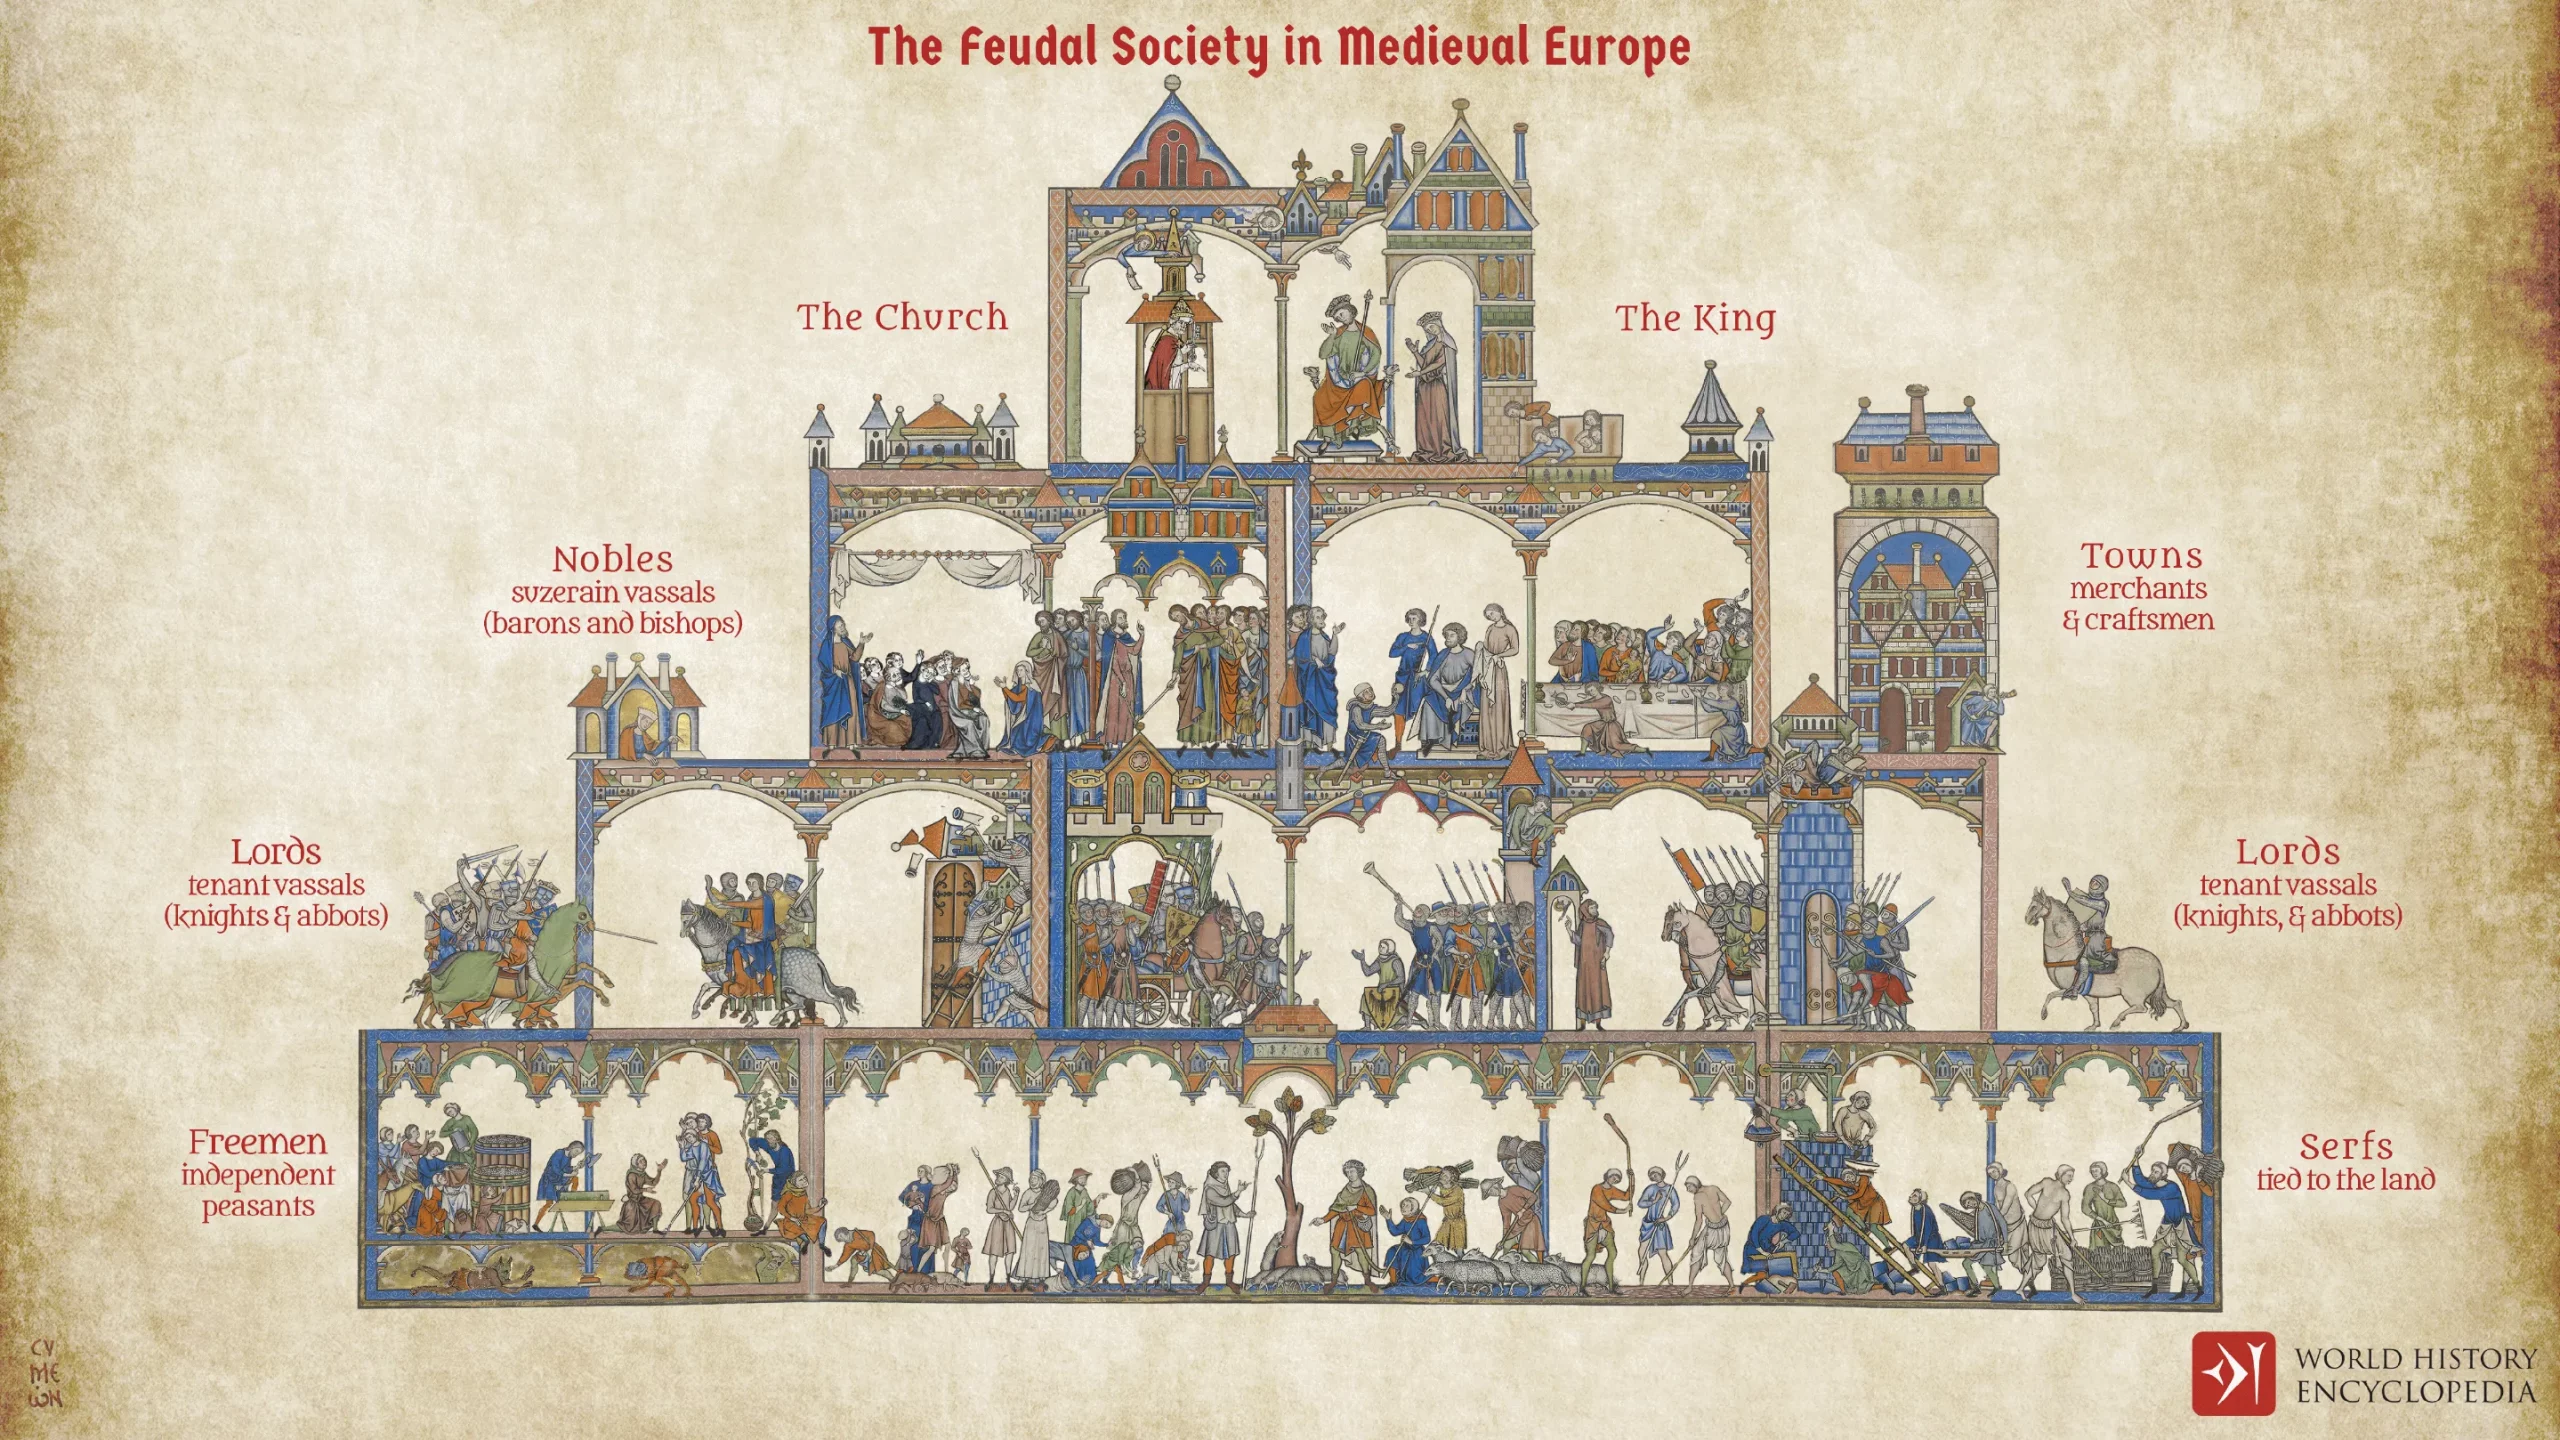 Umjetnički prikaz feudalne piramide i navodno jasno uređenog srednjovjekovnog europskog društva (©World History Encyclopedia).